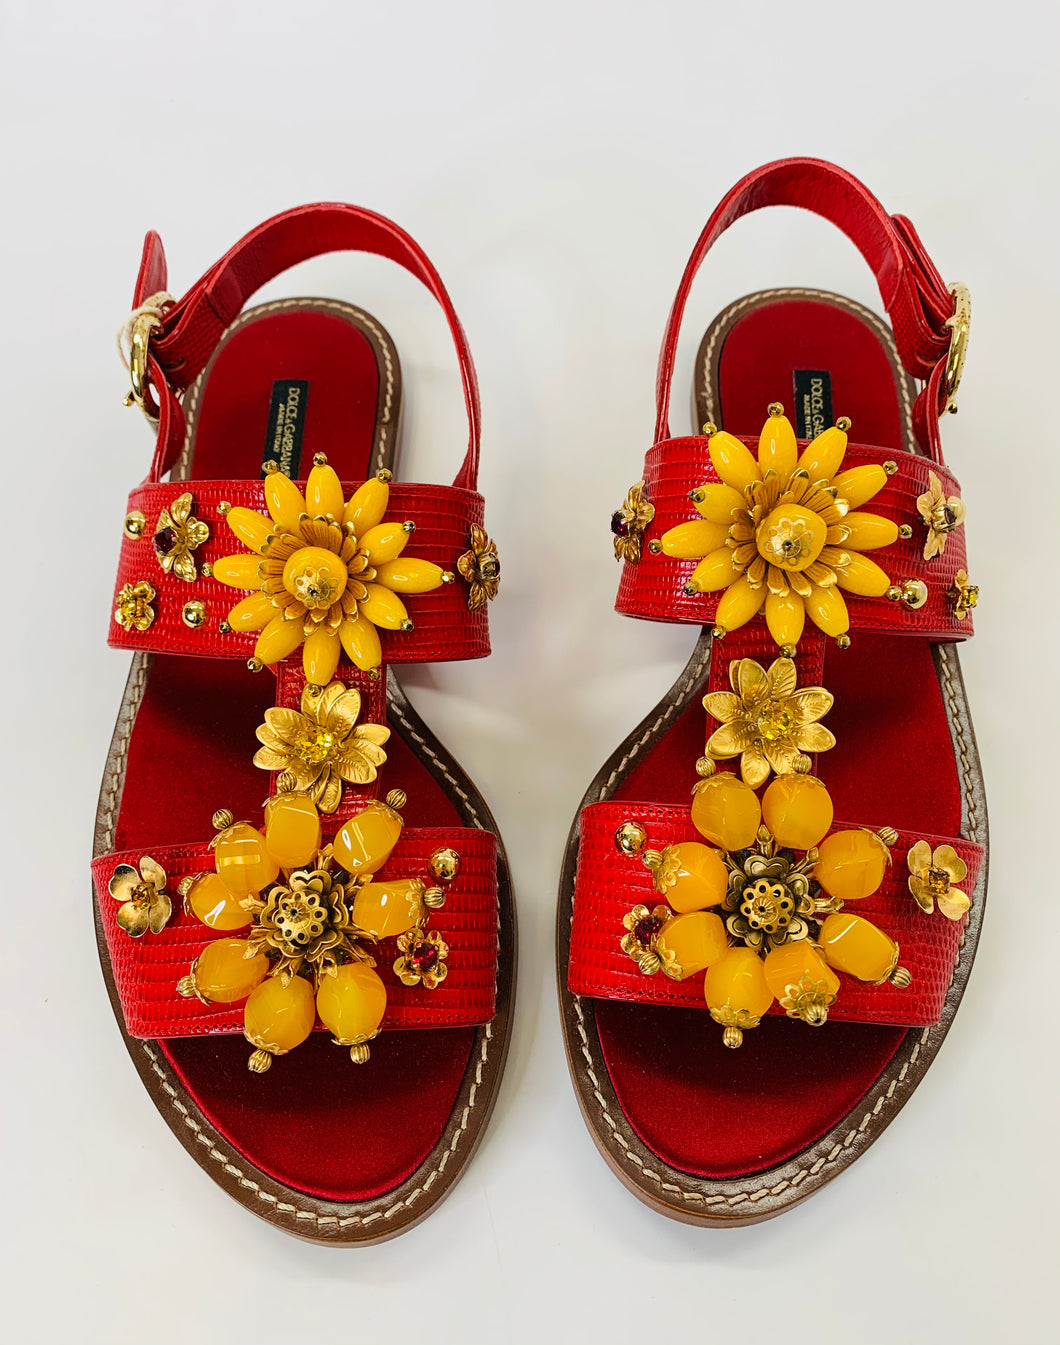 Dolce & Gabbana Floral Embellished Flat Sandals Size 41